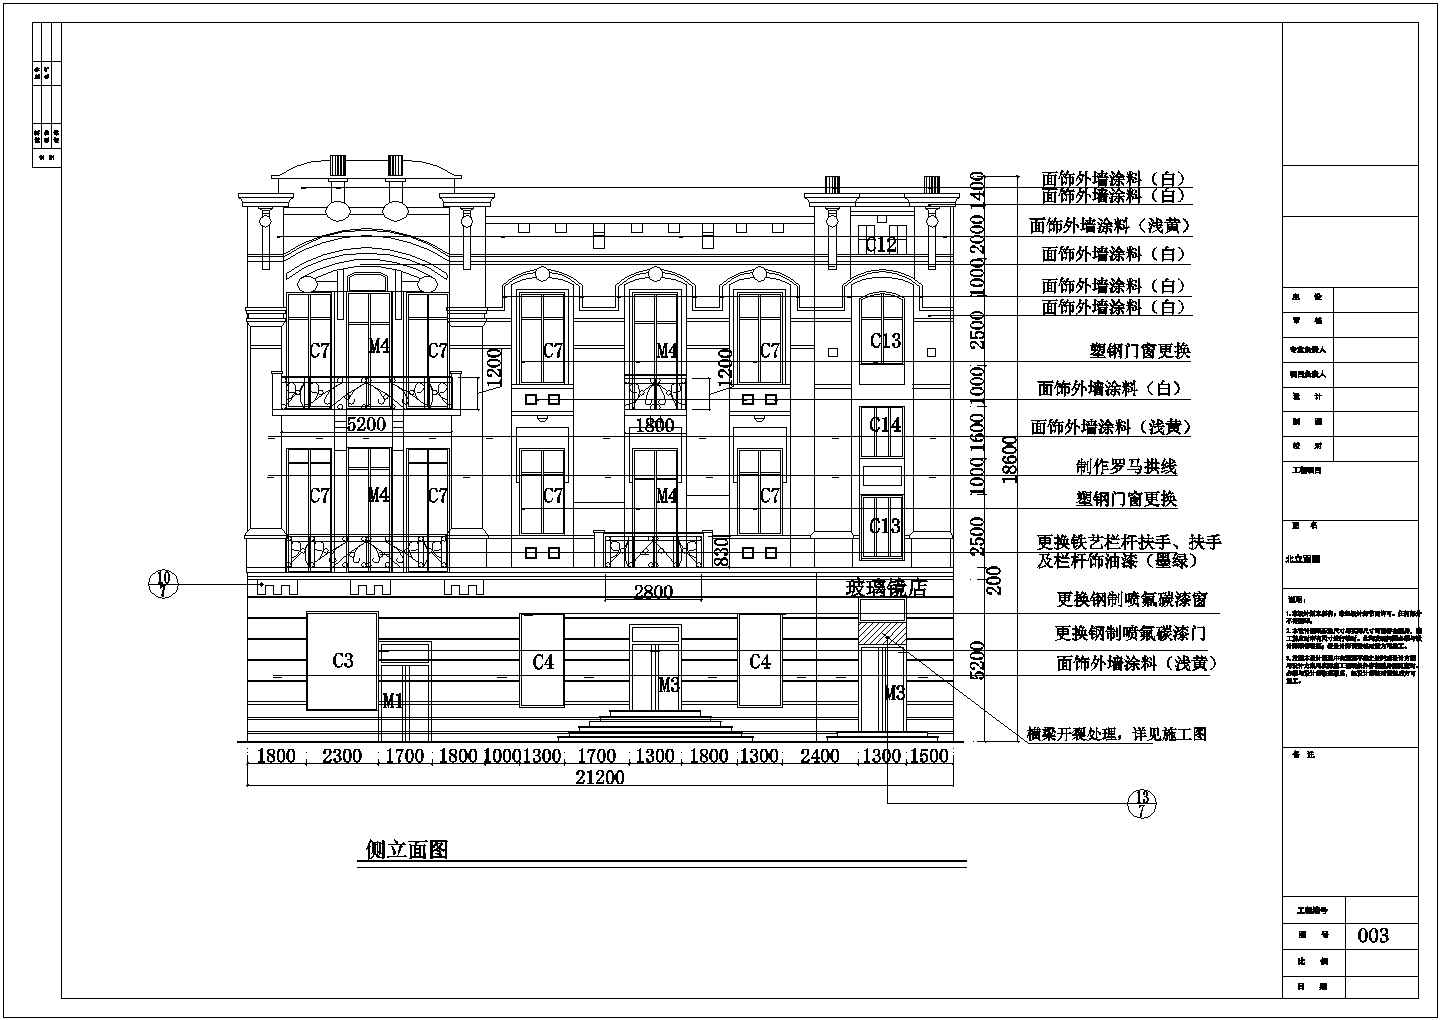 哈尔滨某保护建筑外立面装修施工图(3栋)